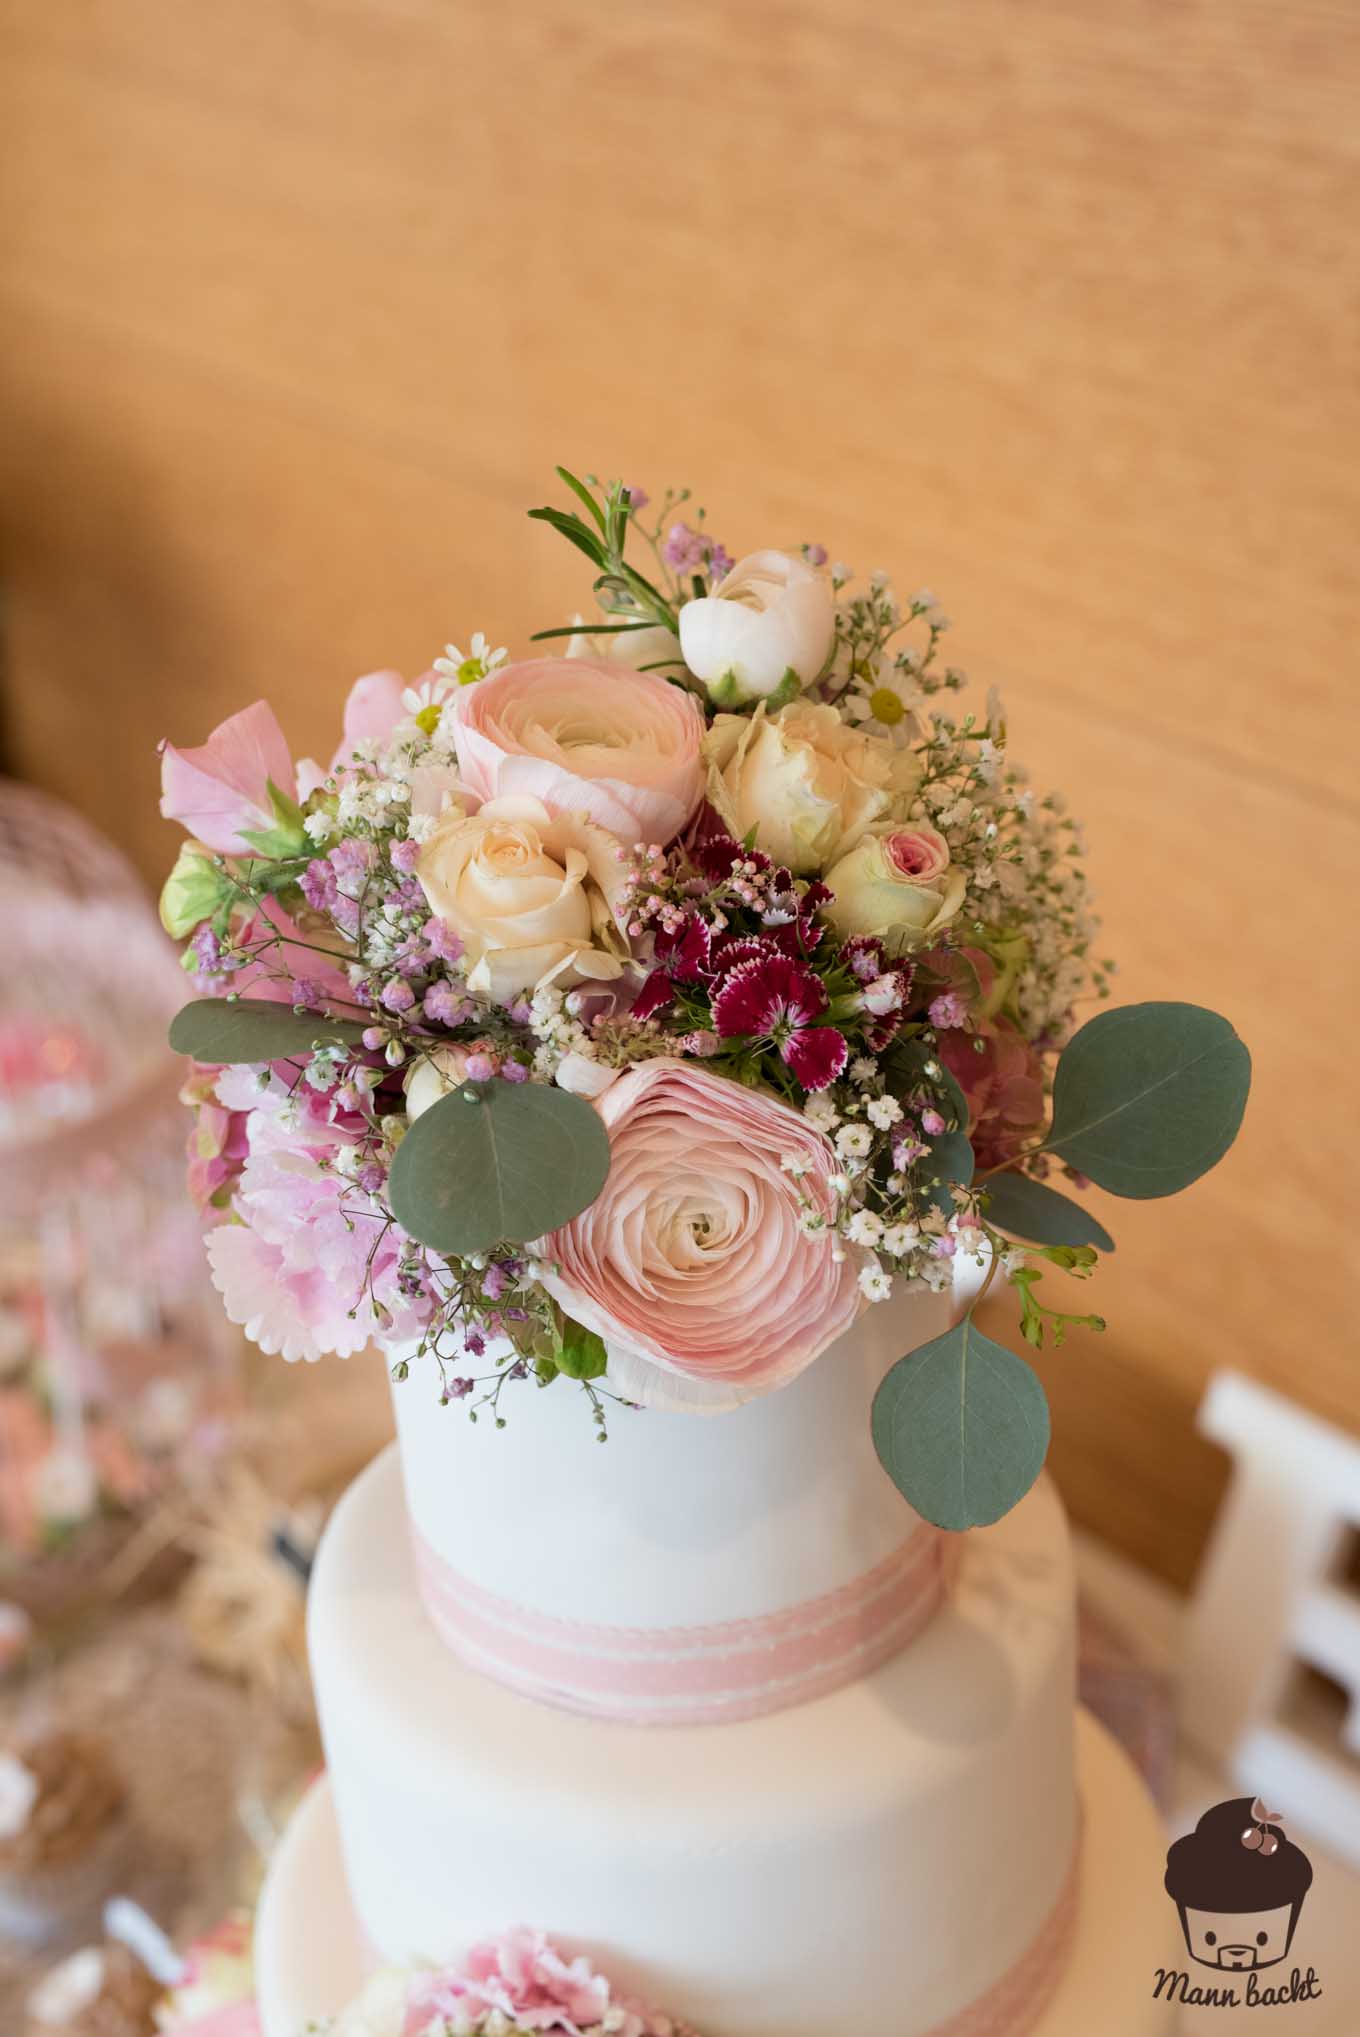 Wedding Cake Hochzeitstorte Mann backt Vintage echte Blumen (7 von 7)